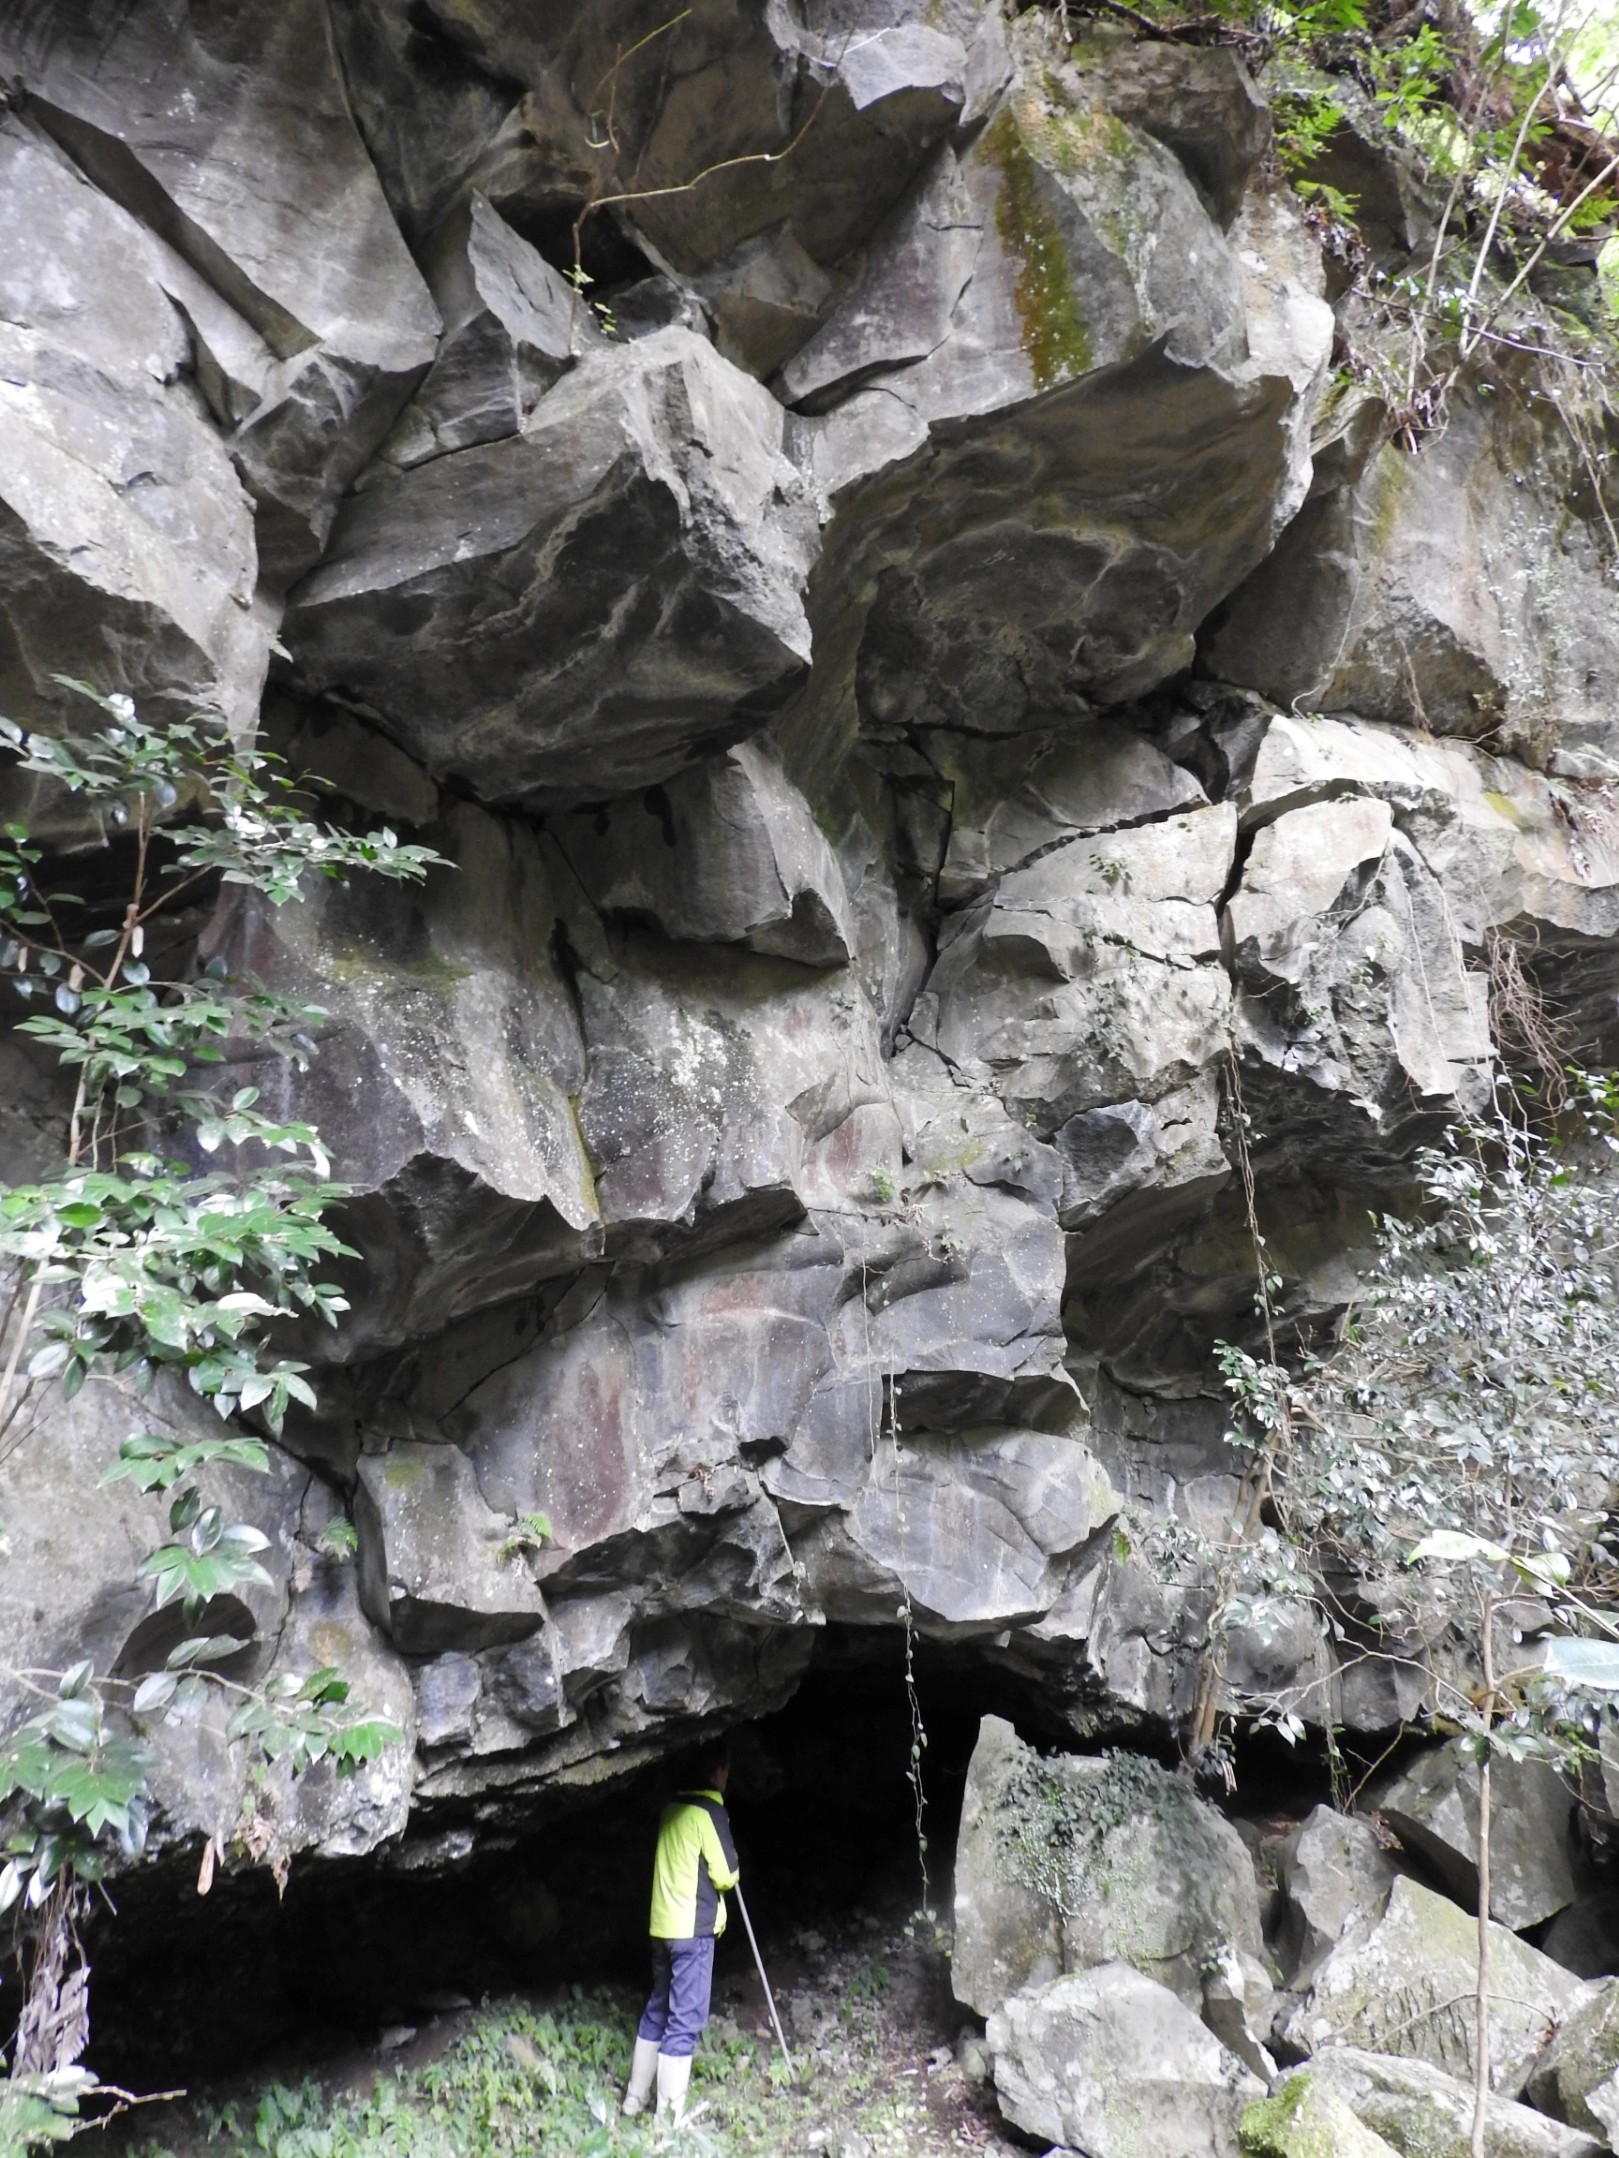 溶岩流の到達点である長野台地末端はご覧のような溶岩の巨壁が見られる。この下に尼僧らが修行した比丘尼の穴がある。今は埋まる